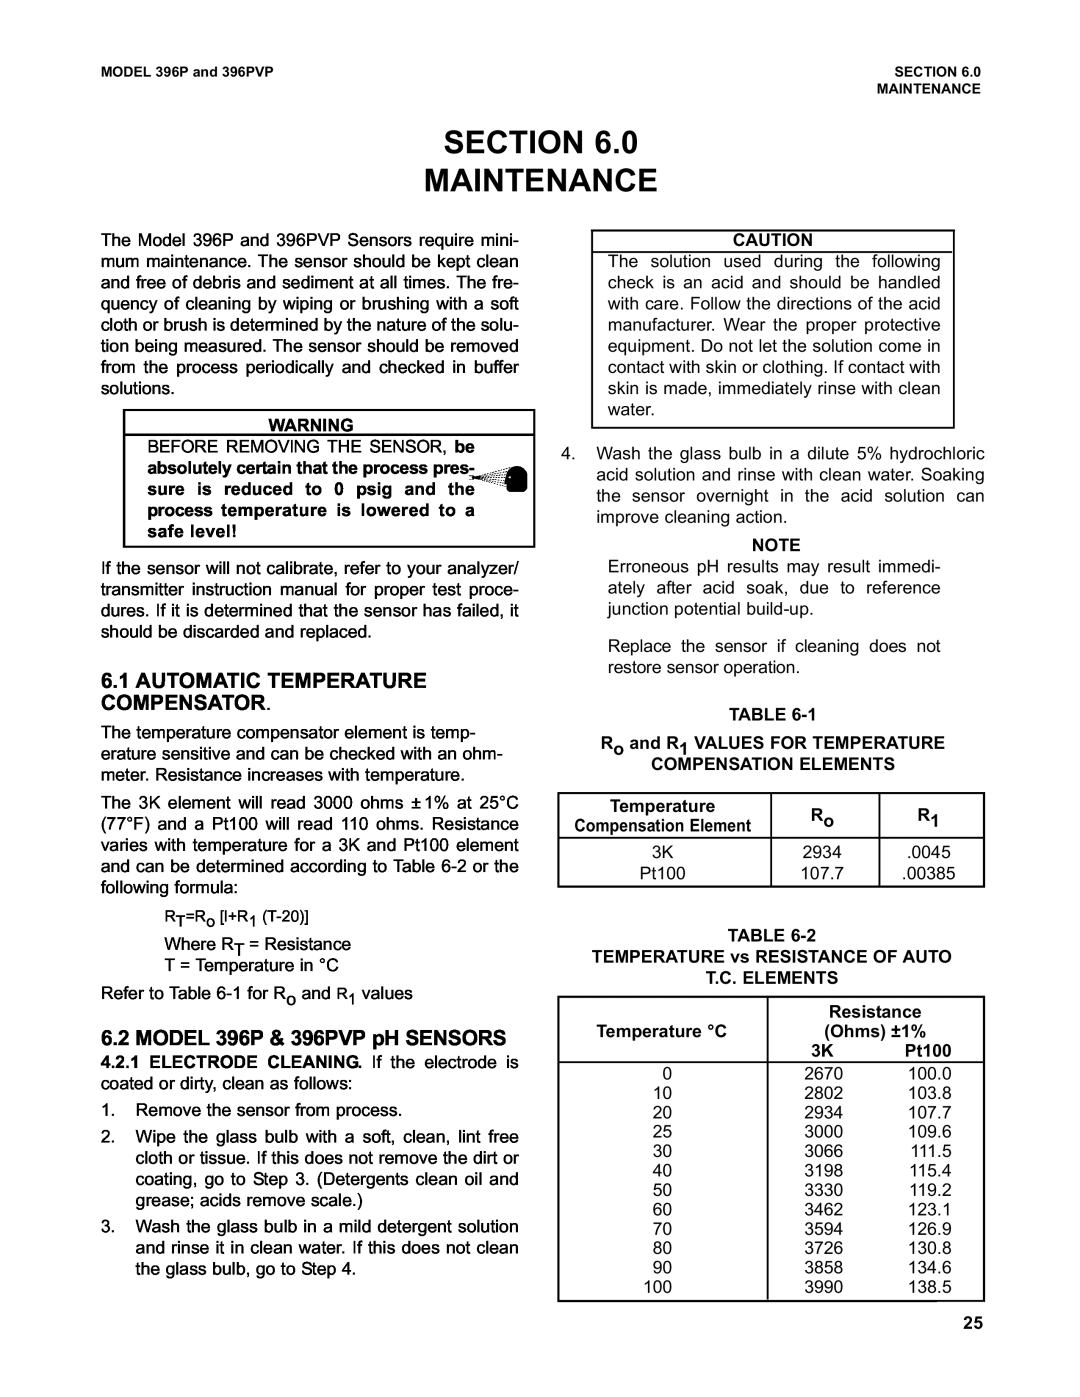 Emerson Process Management Section Maintenance, 6.1AUTOMATIC TEMPERATURE COMPENSATOR, MODEL 396P & 396PVP pH SENSORS 